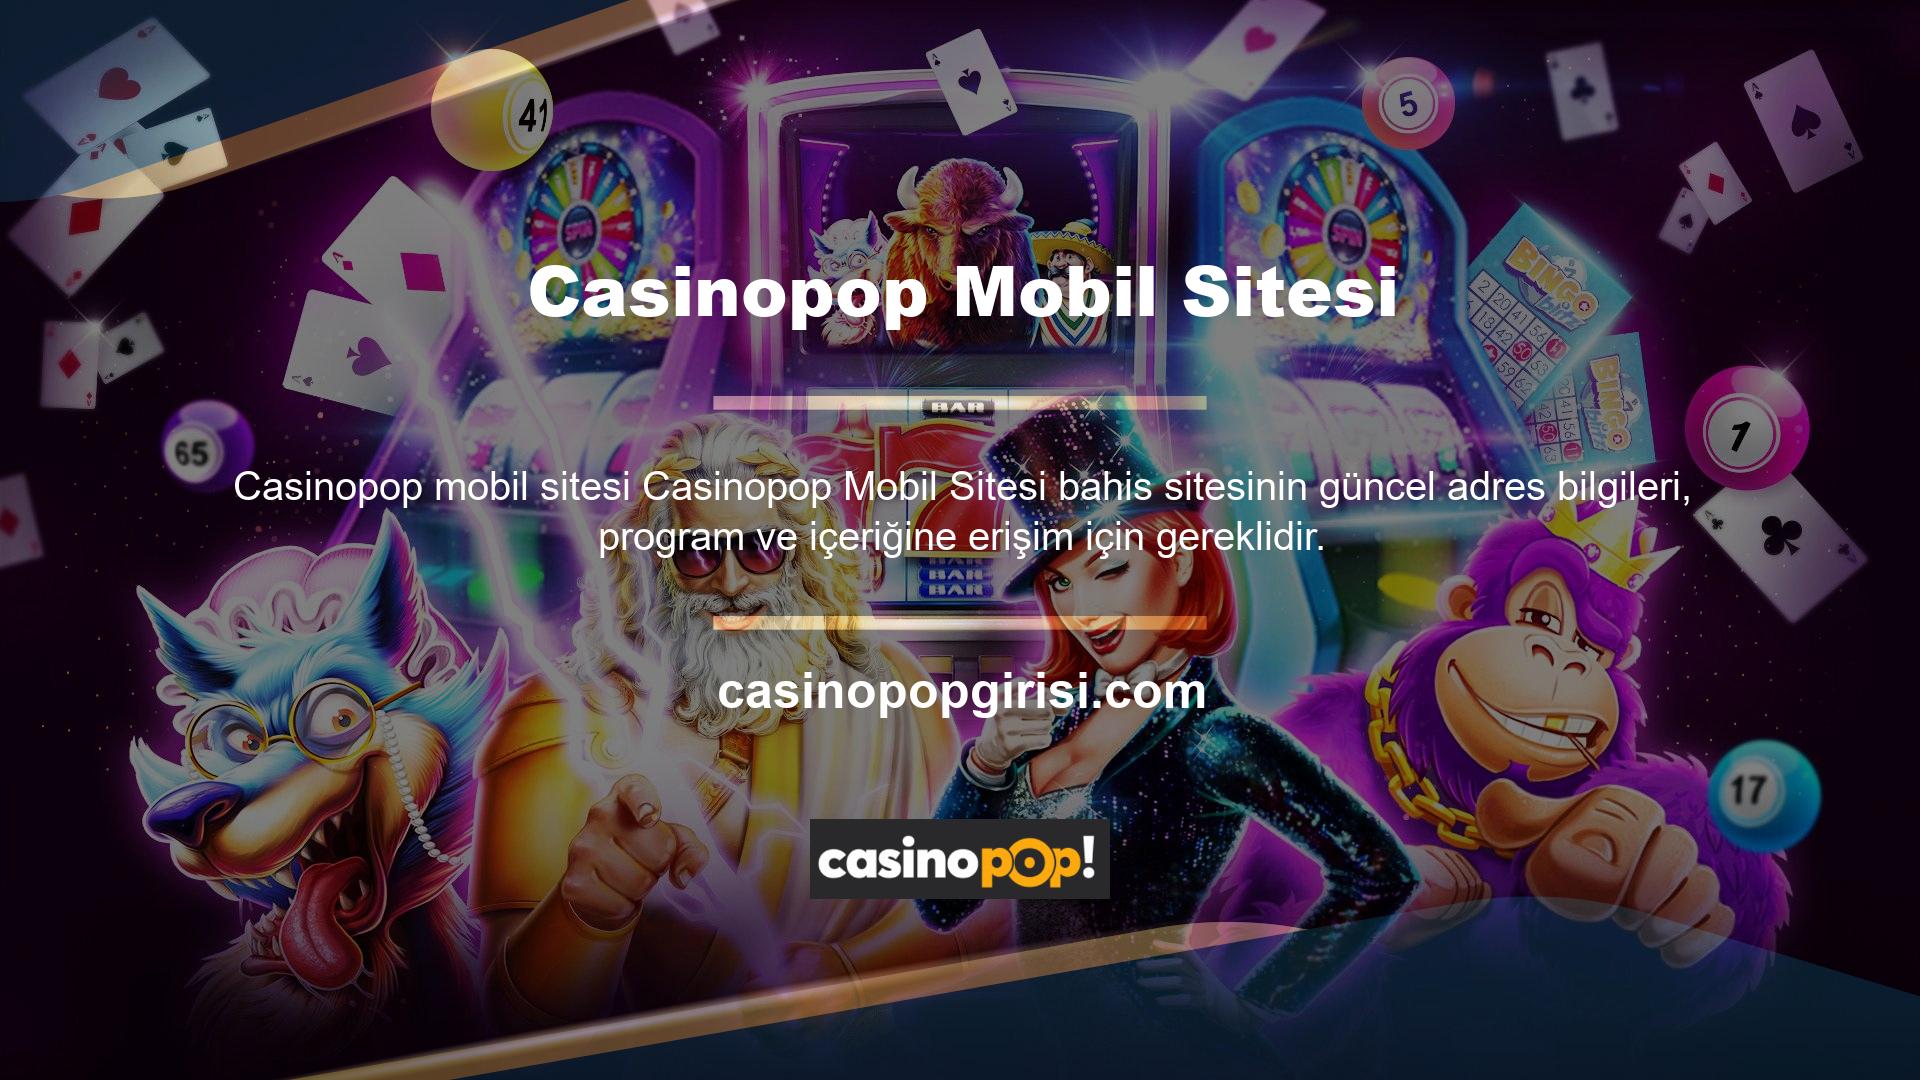 Casinopop Mobil Sitesi, bahis sitelerinin büyük popülaritesinin nedenlerinden biridir